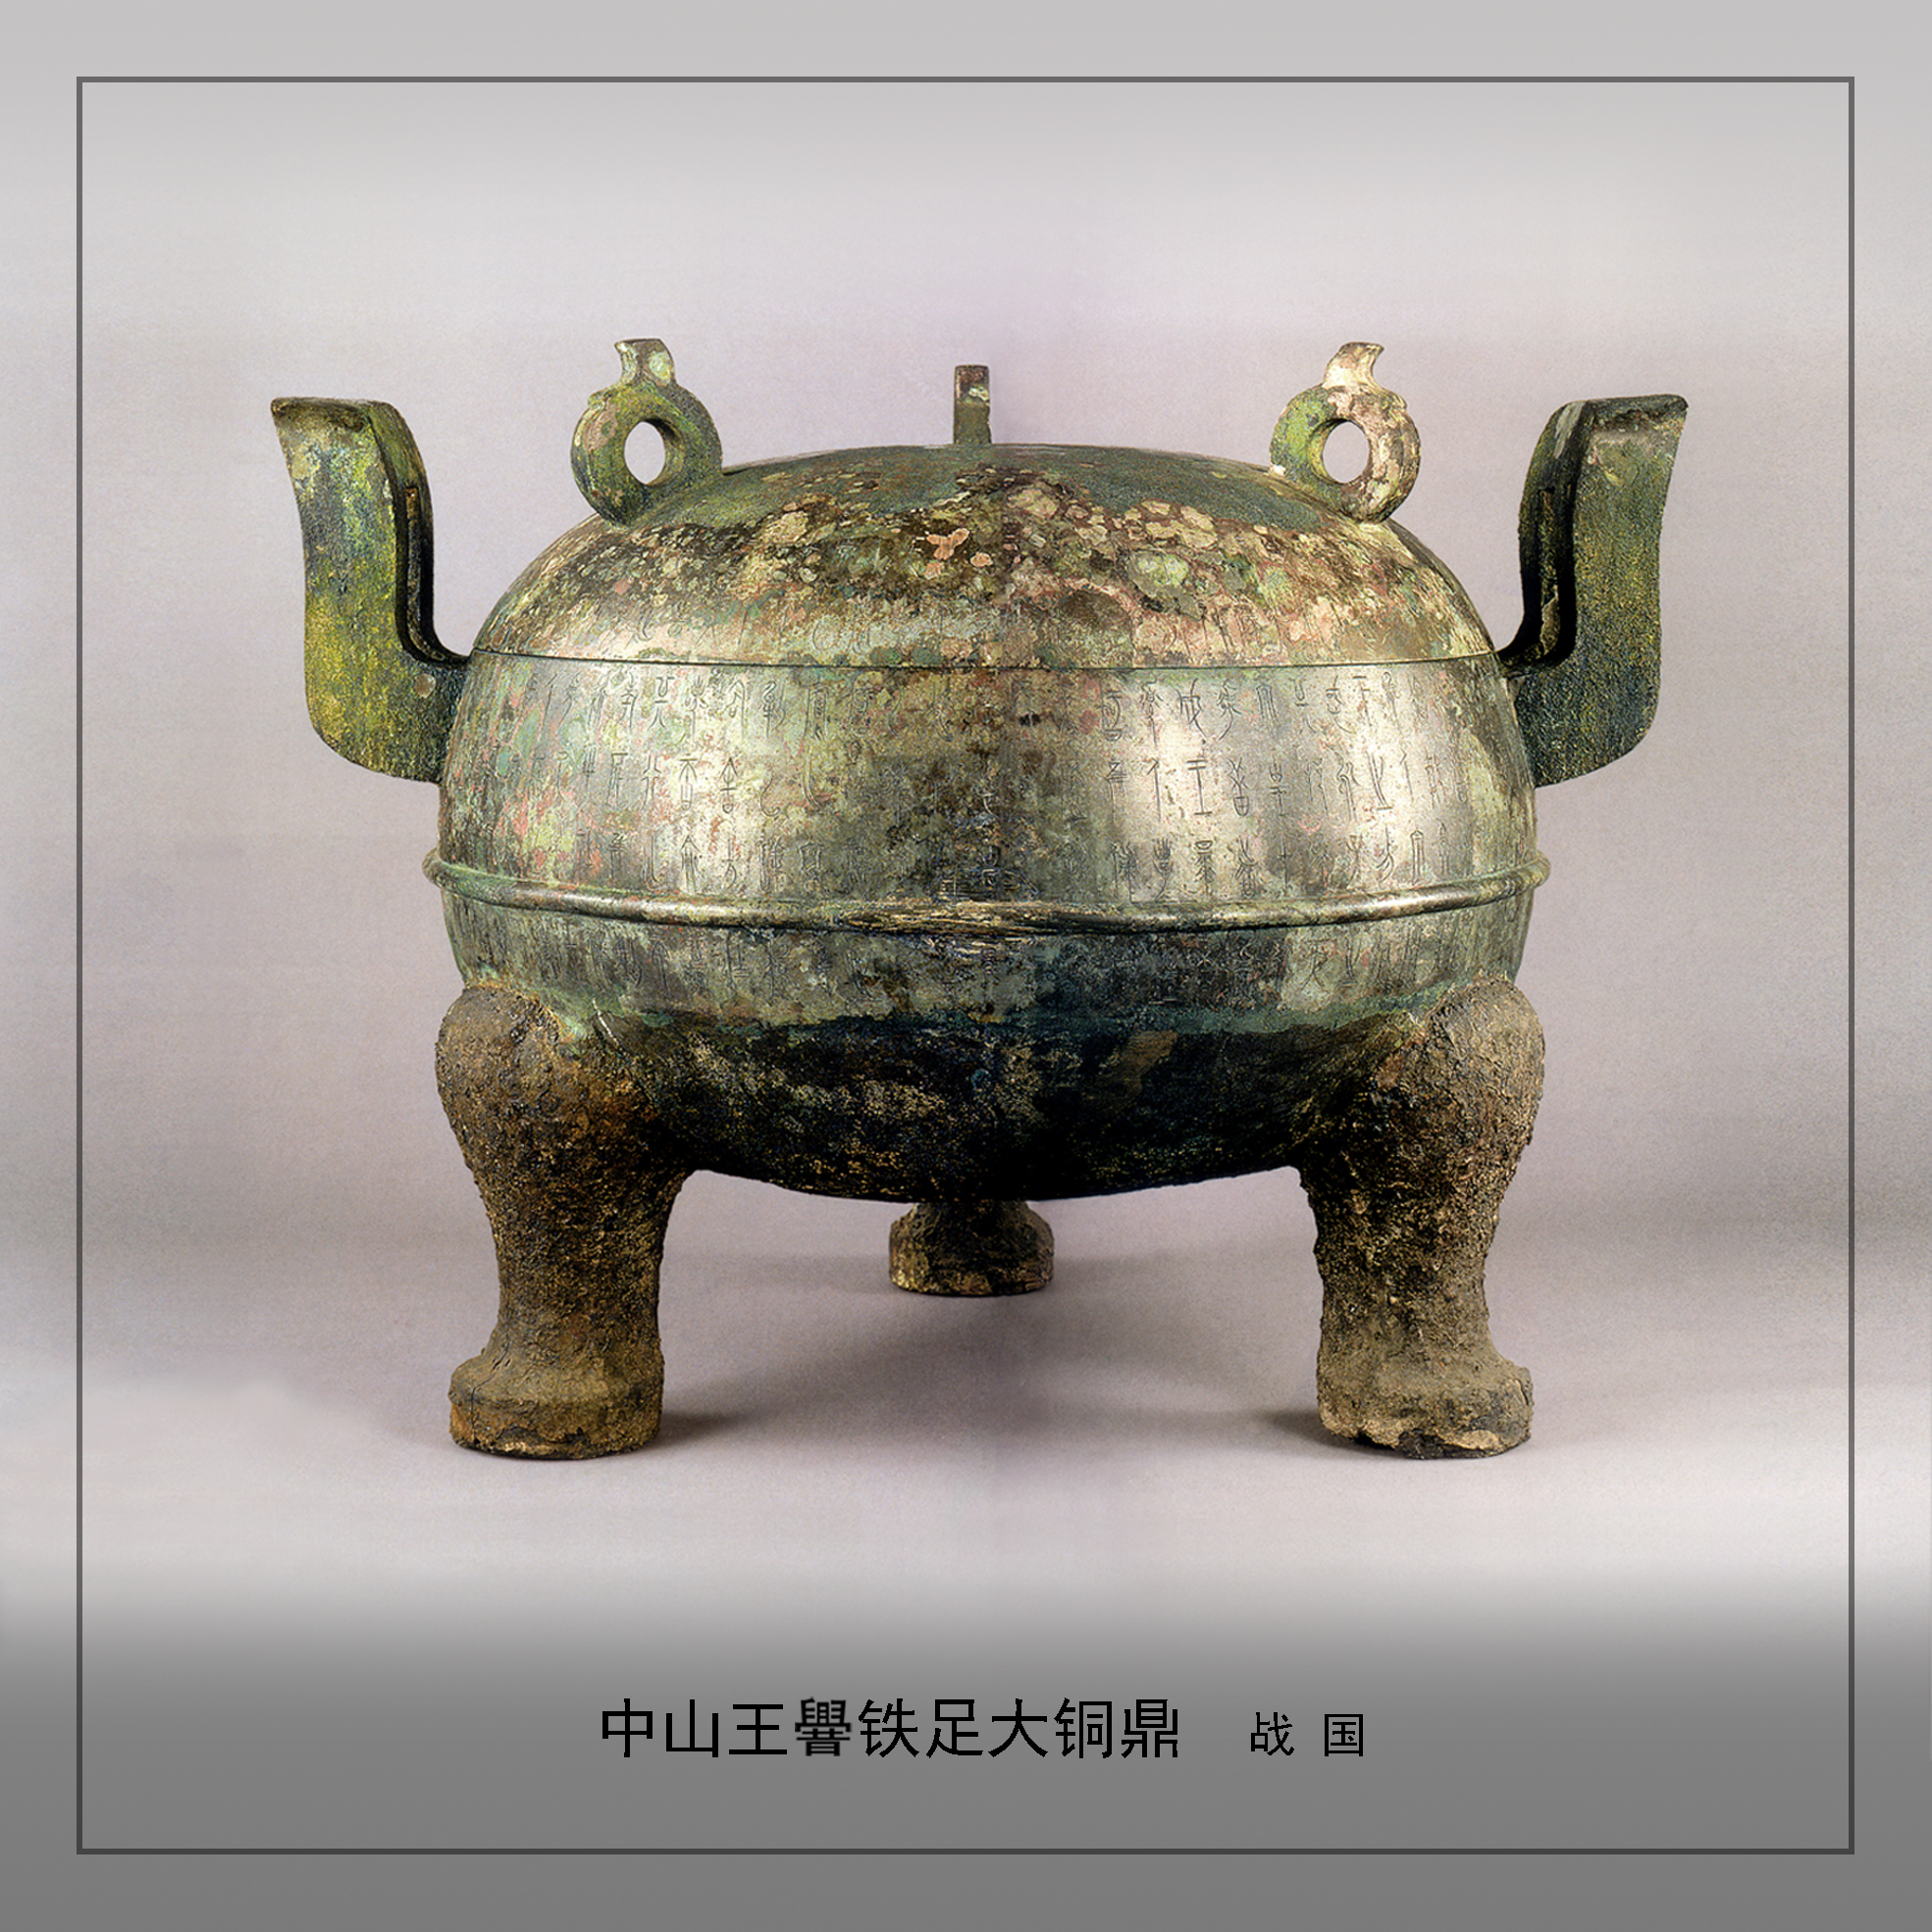 河北博物院展出十大珍宝文物之一中山王cuo铁足大铜鼎